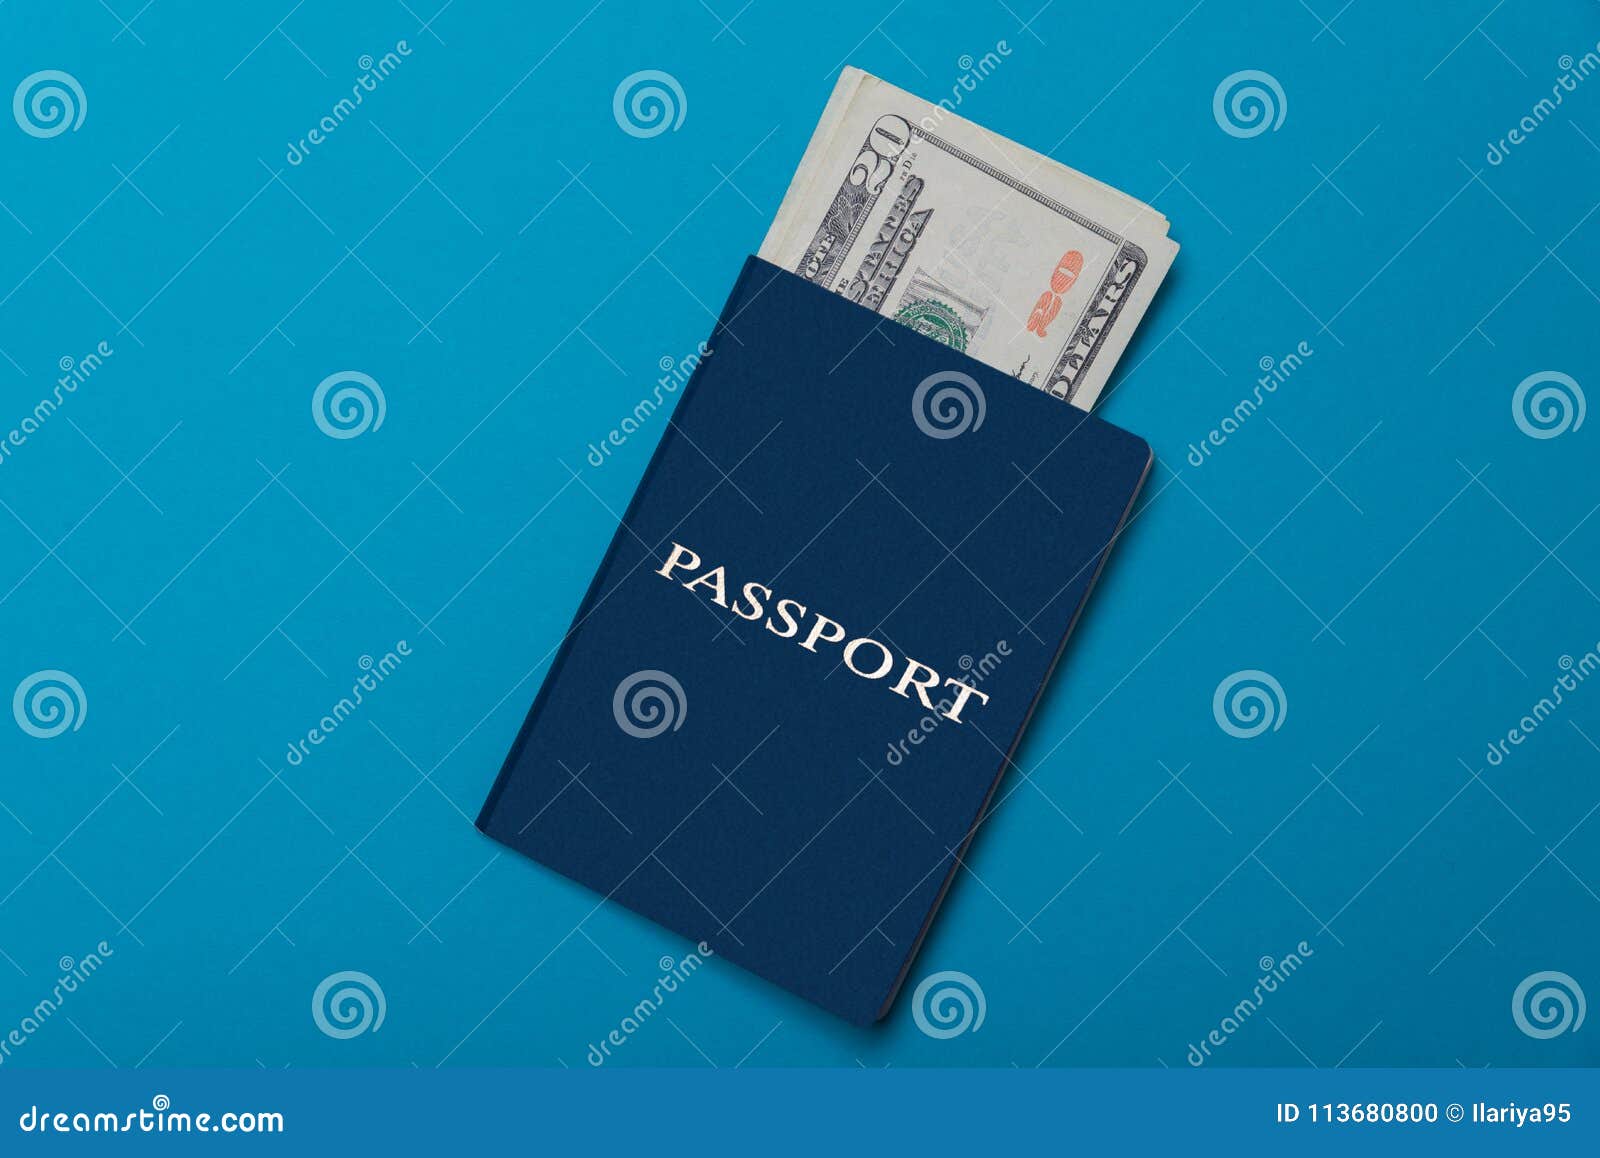 Download 68 Koleksi Background Blue Passport Terbaik